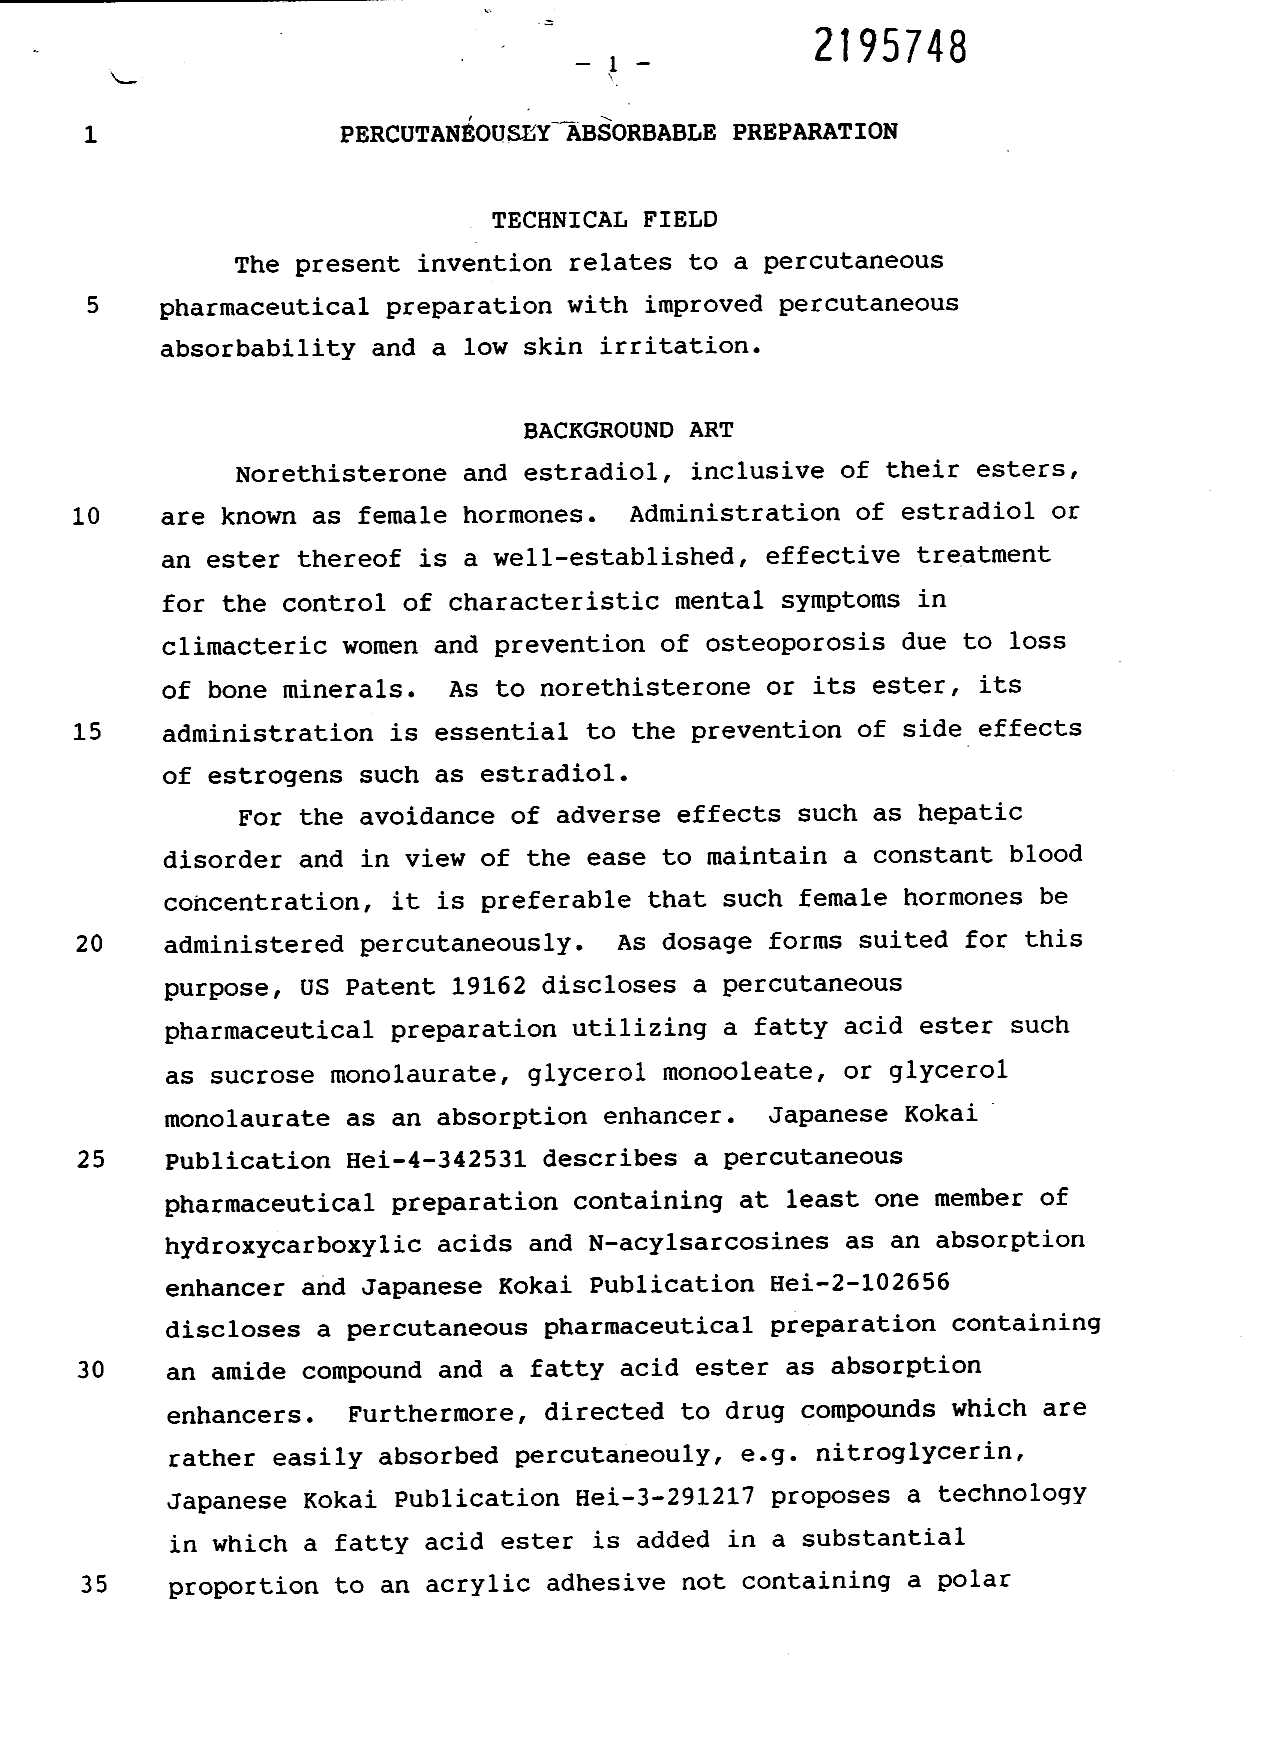 Canadian Patent Document 2195748. Description 19960208. Image 1 of 33